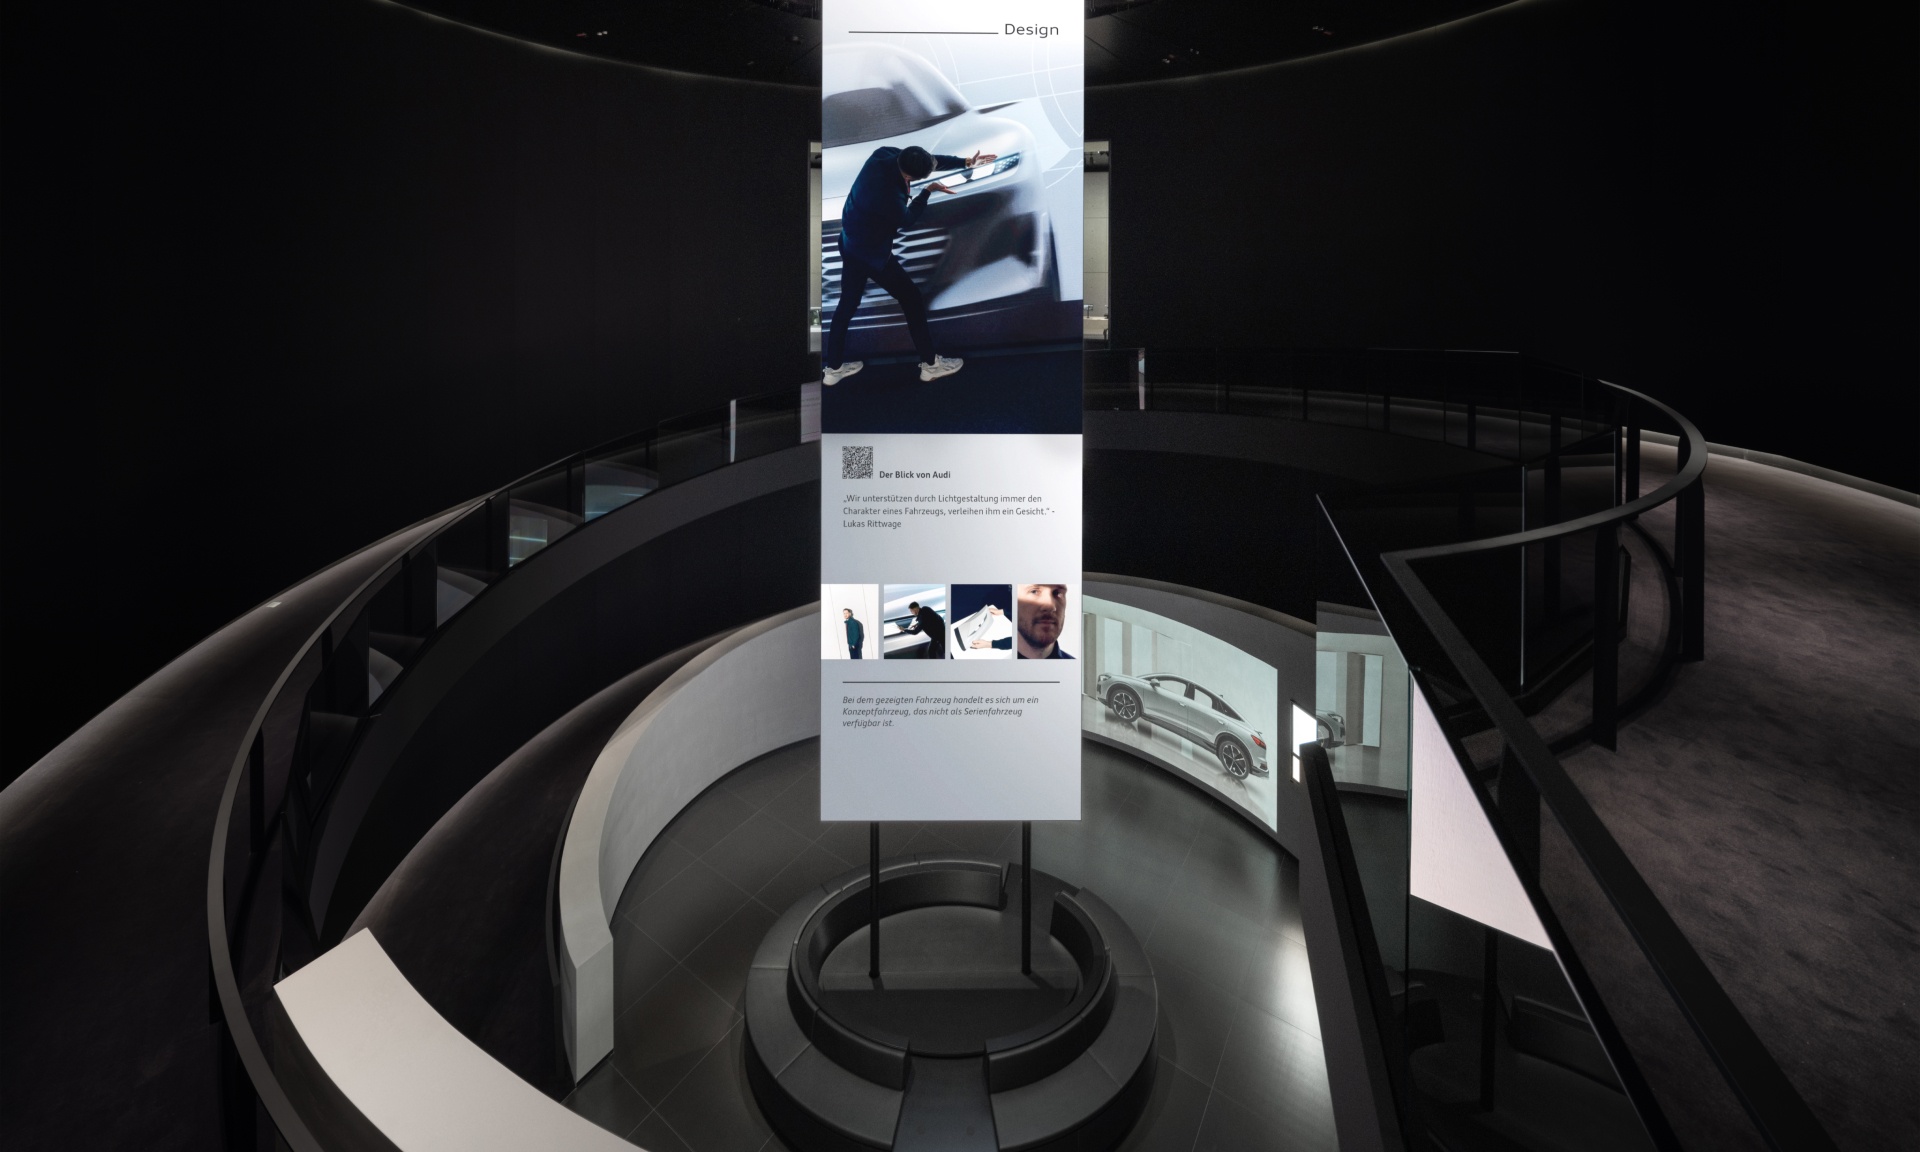 Der Audi Q4 e-tron und eine Projektion zum Thema Nachhaltigkeit sind zu sehen. Daneben der Infotisch.